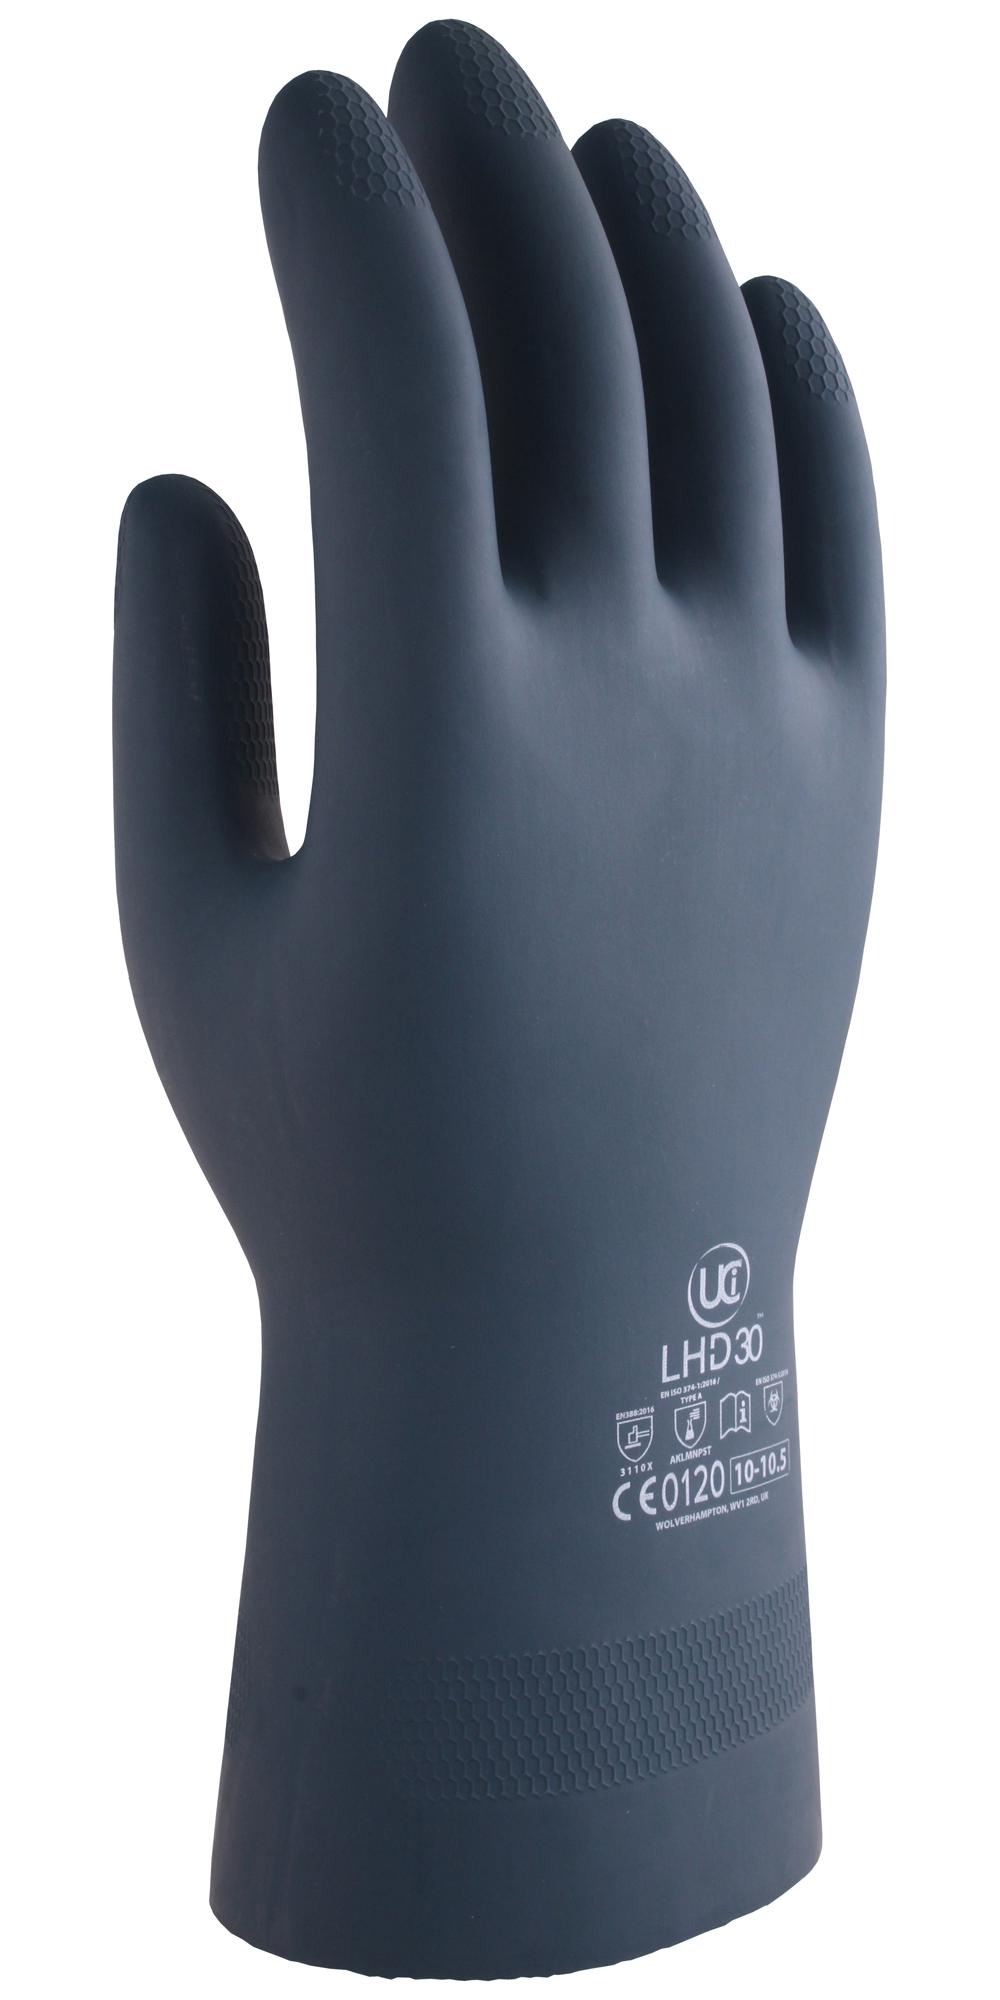 Uci G/lhd30/bk/07 Gloves, Rubber/neoprene, Black, S